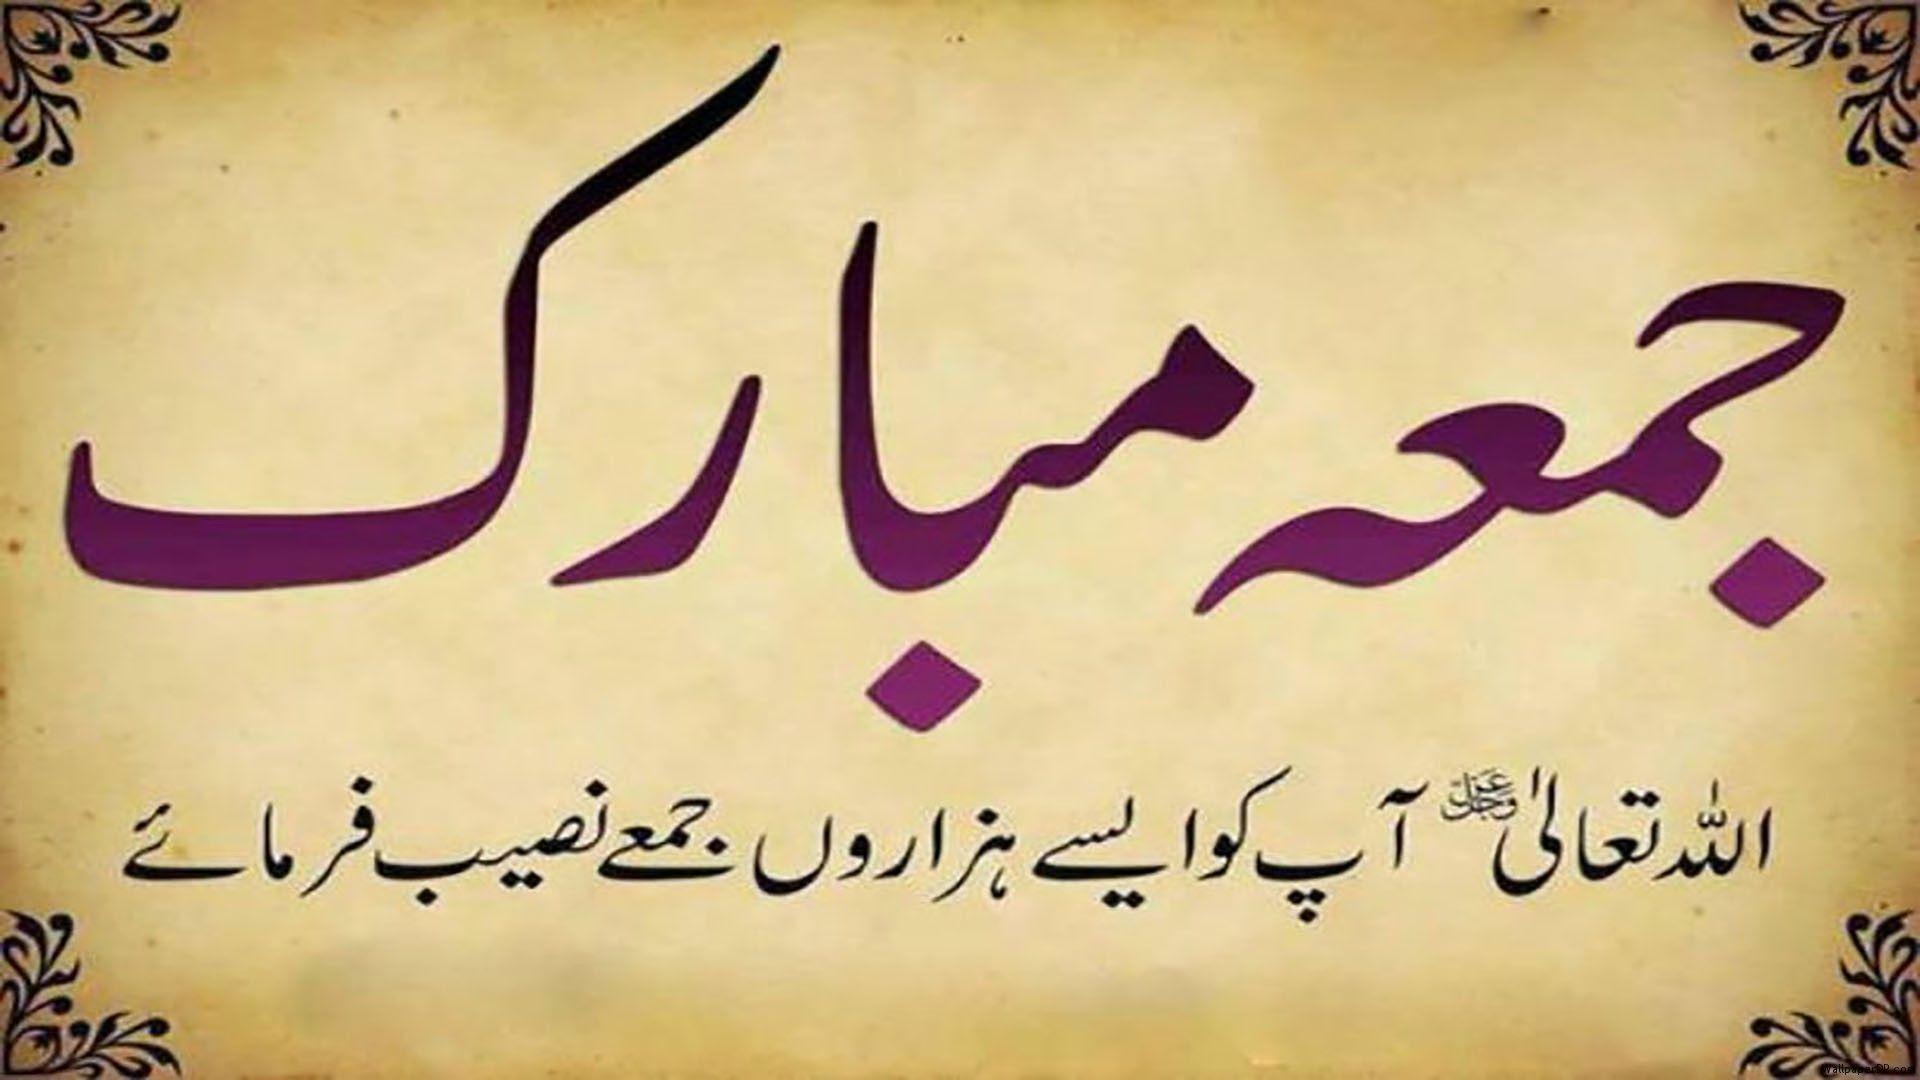 Teenage girl Love urdu photo poetry hd wallpaper ~ Urdu Poetry SMS Shayari  images